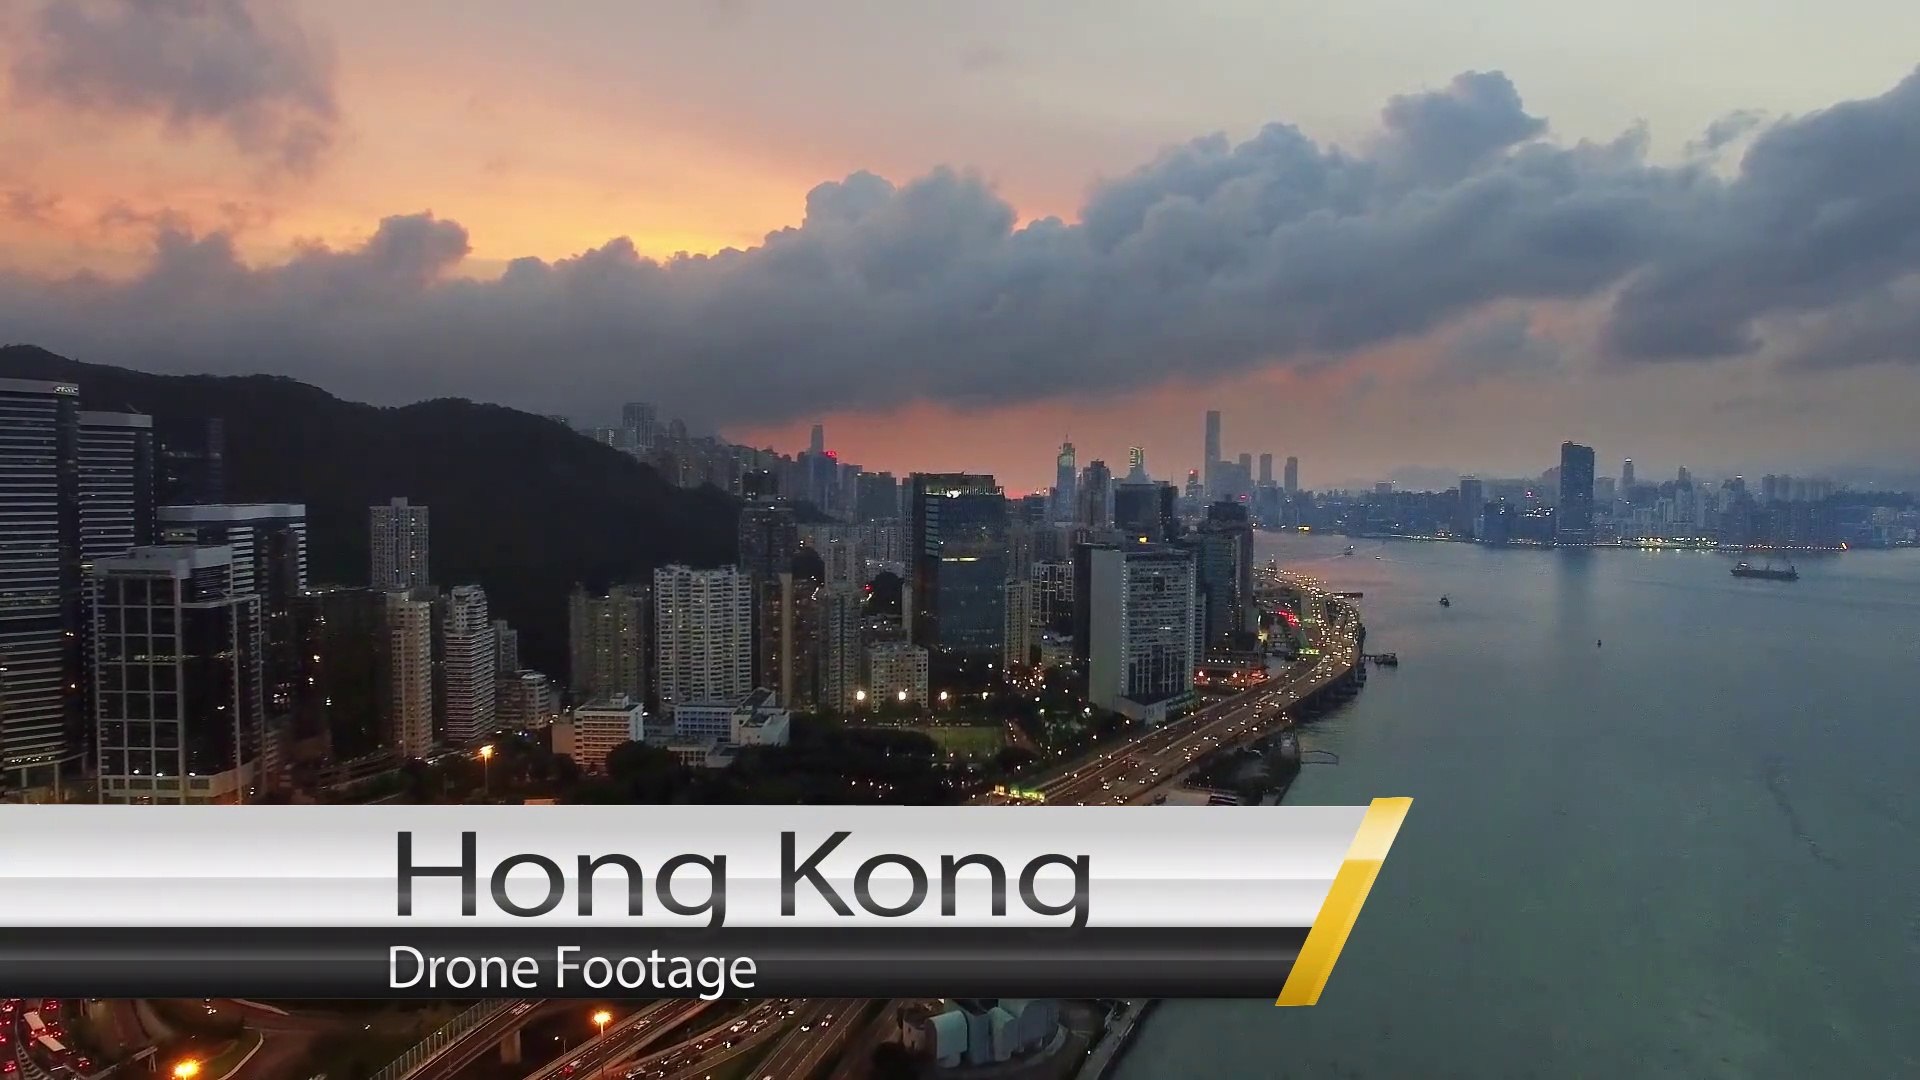 Hong Kong 4k Virtual Tour | Hong Kong Ultra HD 4k video